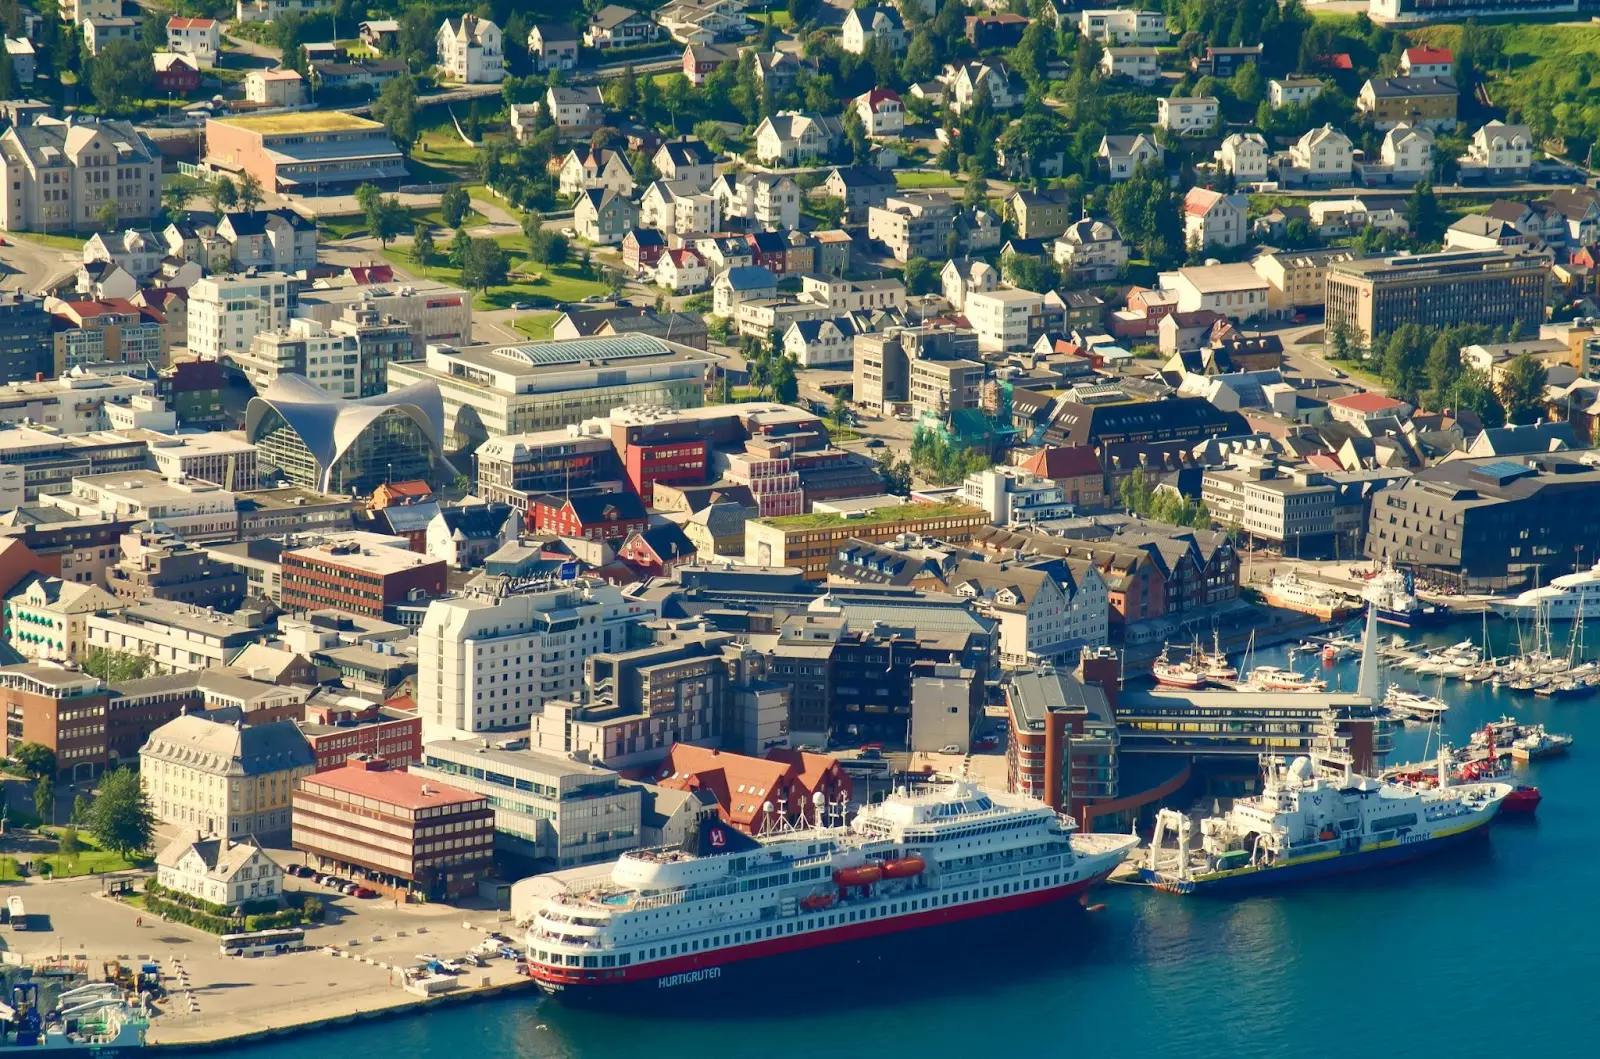 Hurtigruten docked in Tromso